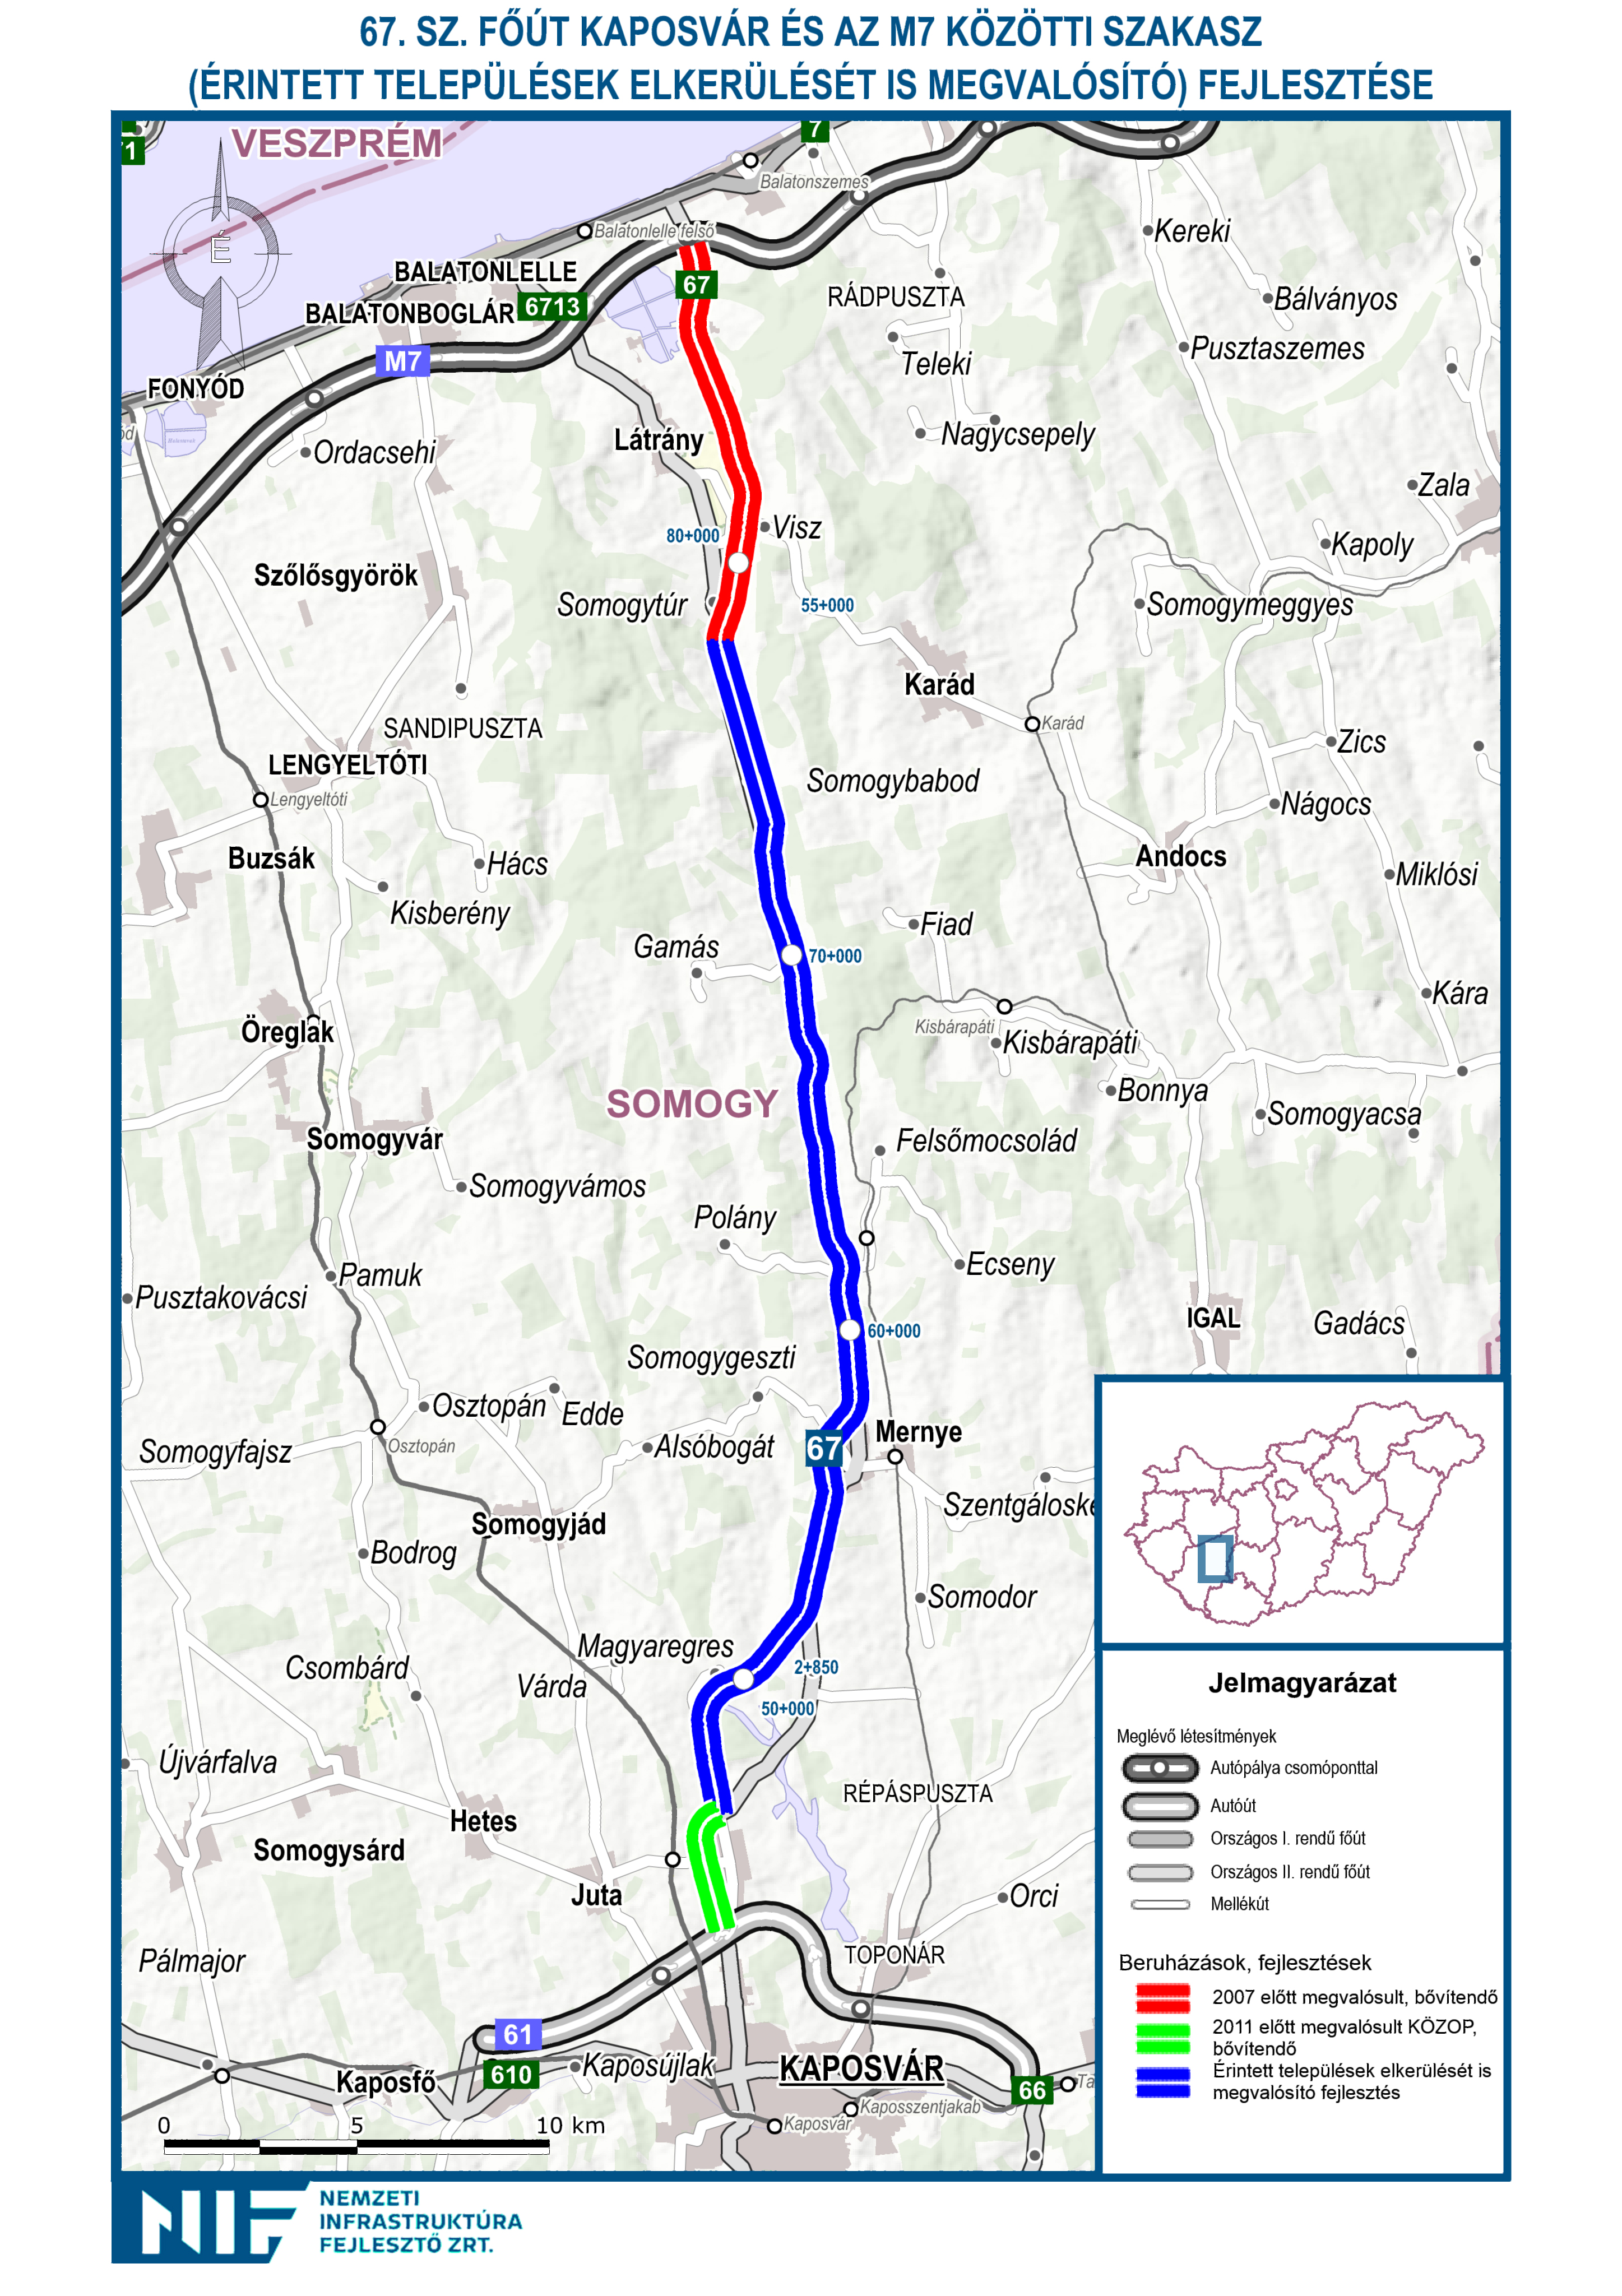 Az R67-es gyorsforgalmi út az M7-es autópályához nyújt közvetlen elérést Kaposvár számára